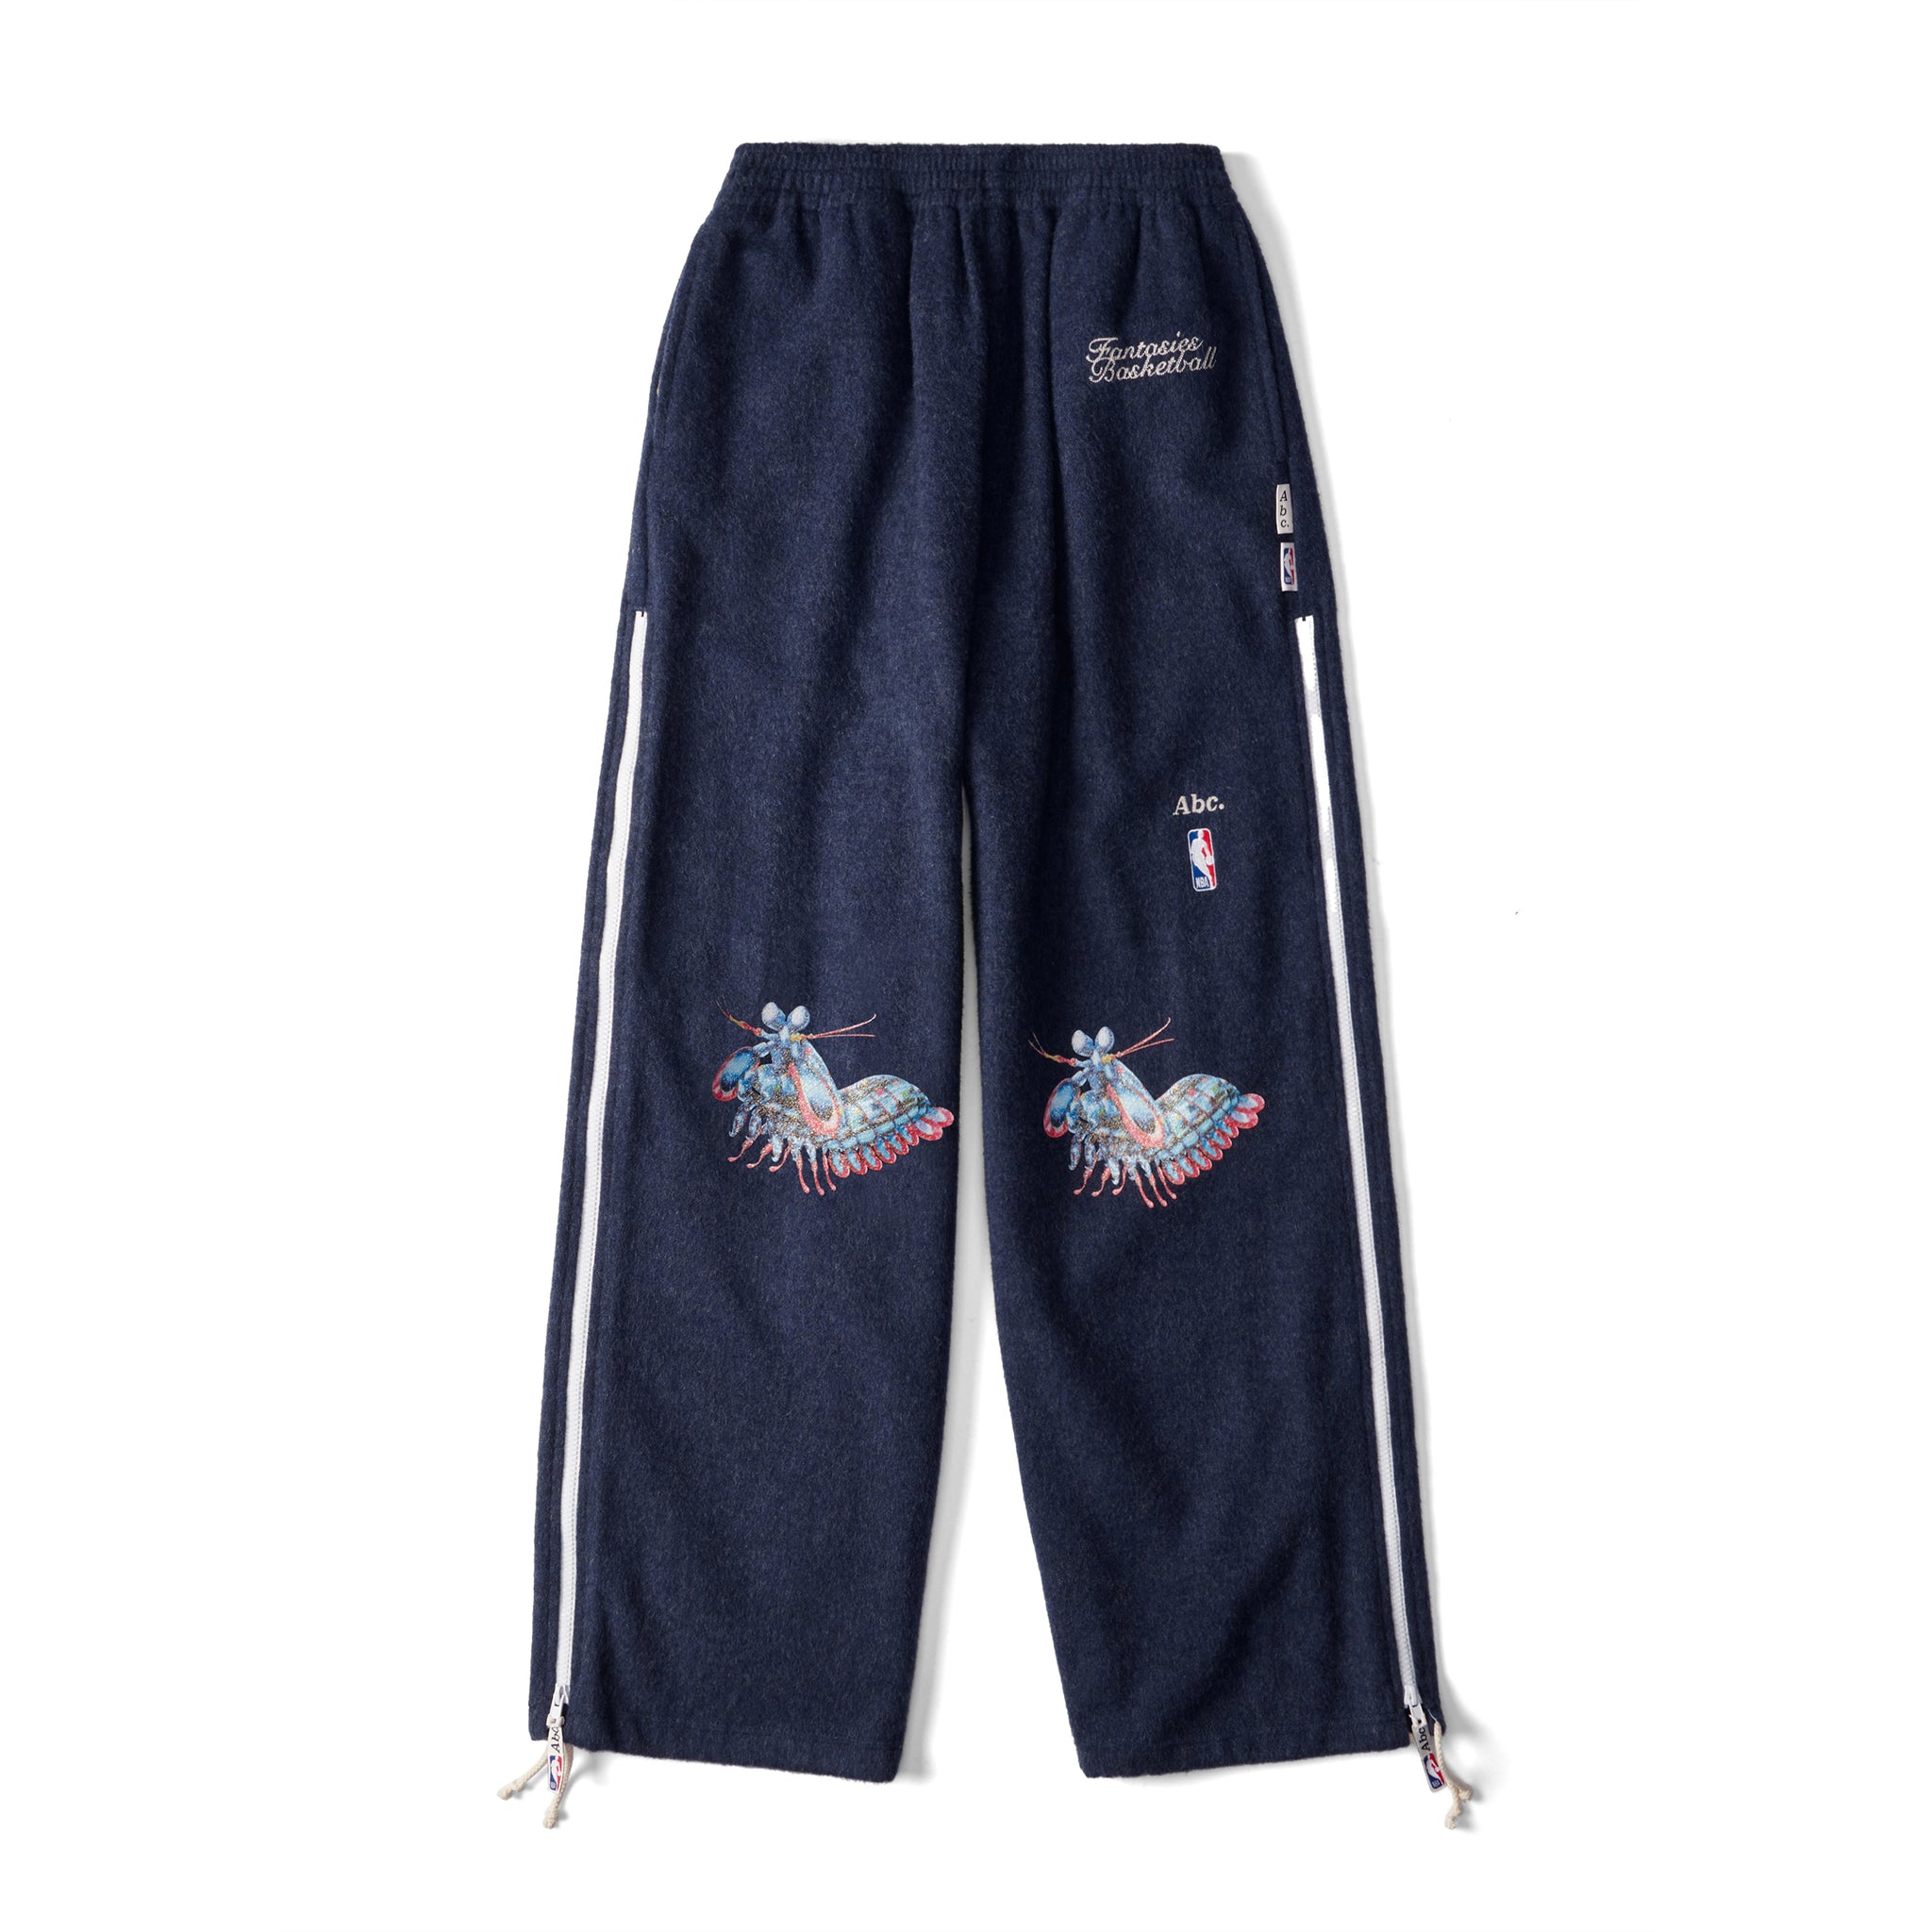 Abc. NBA Wool Warmup Pants (Blue)